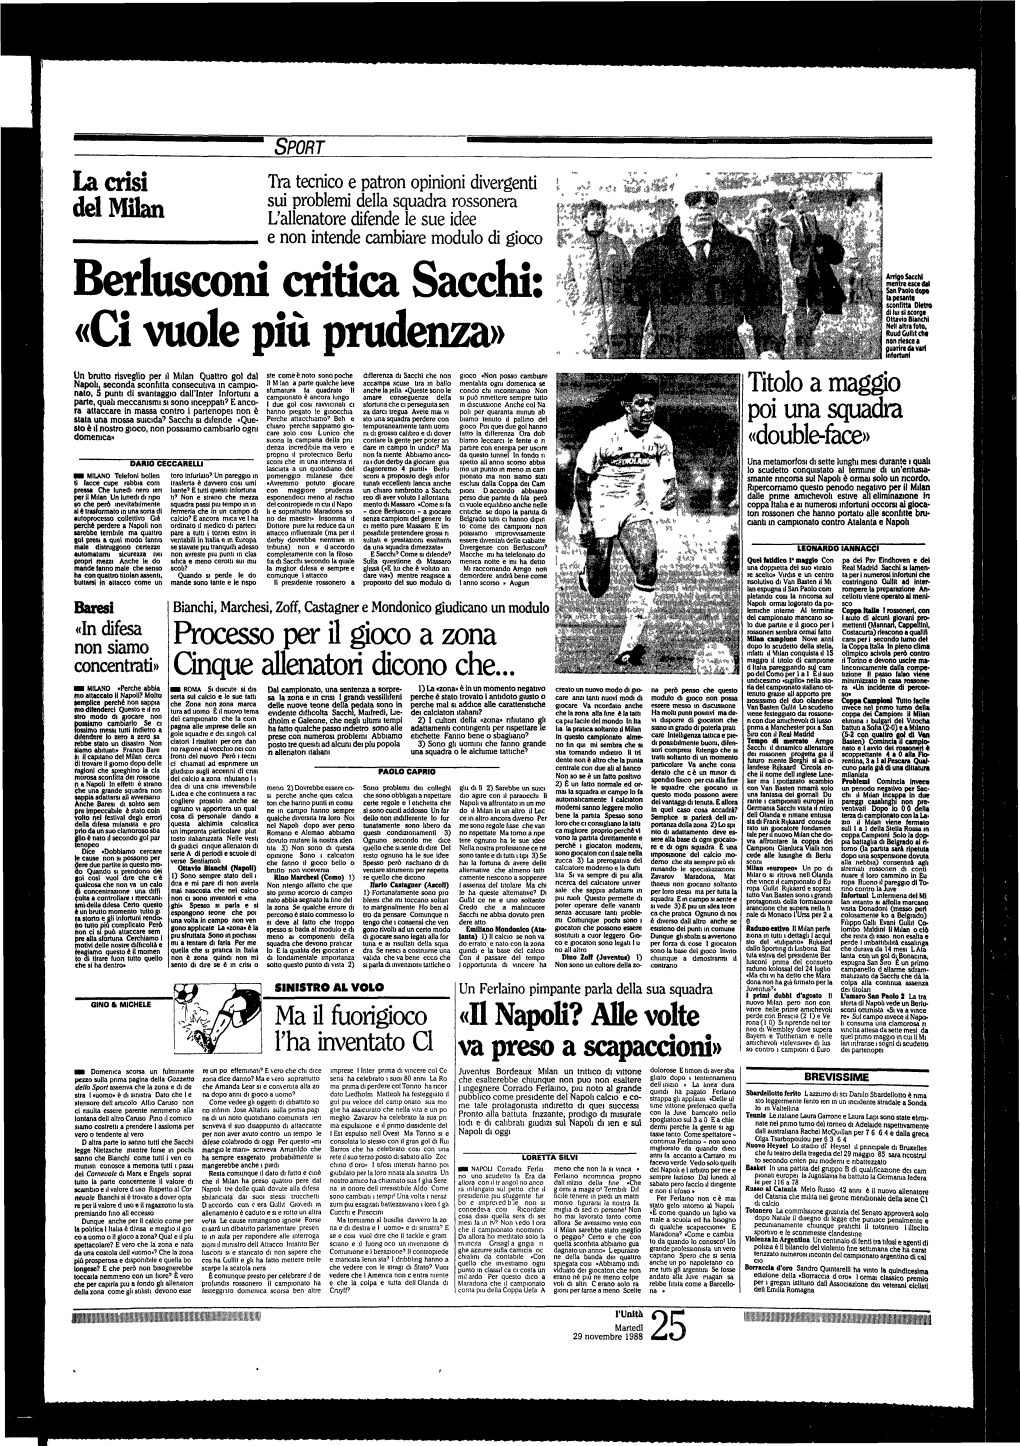 Berlusconi Critica Sacchi